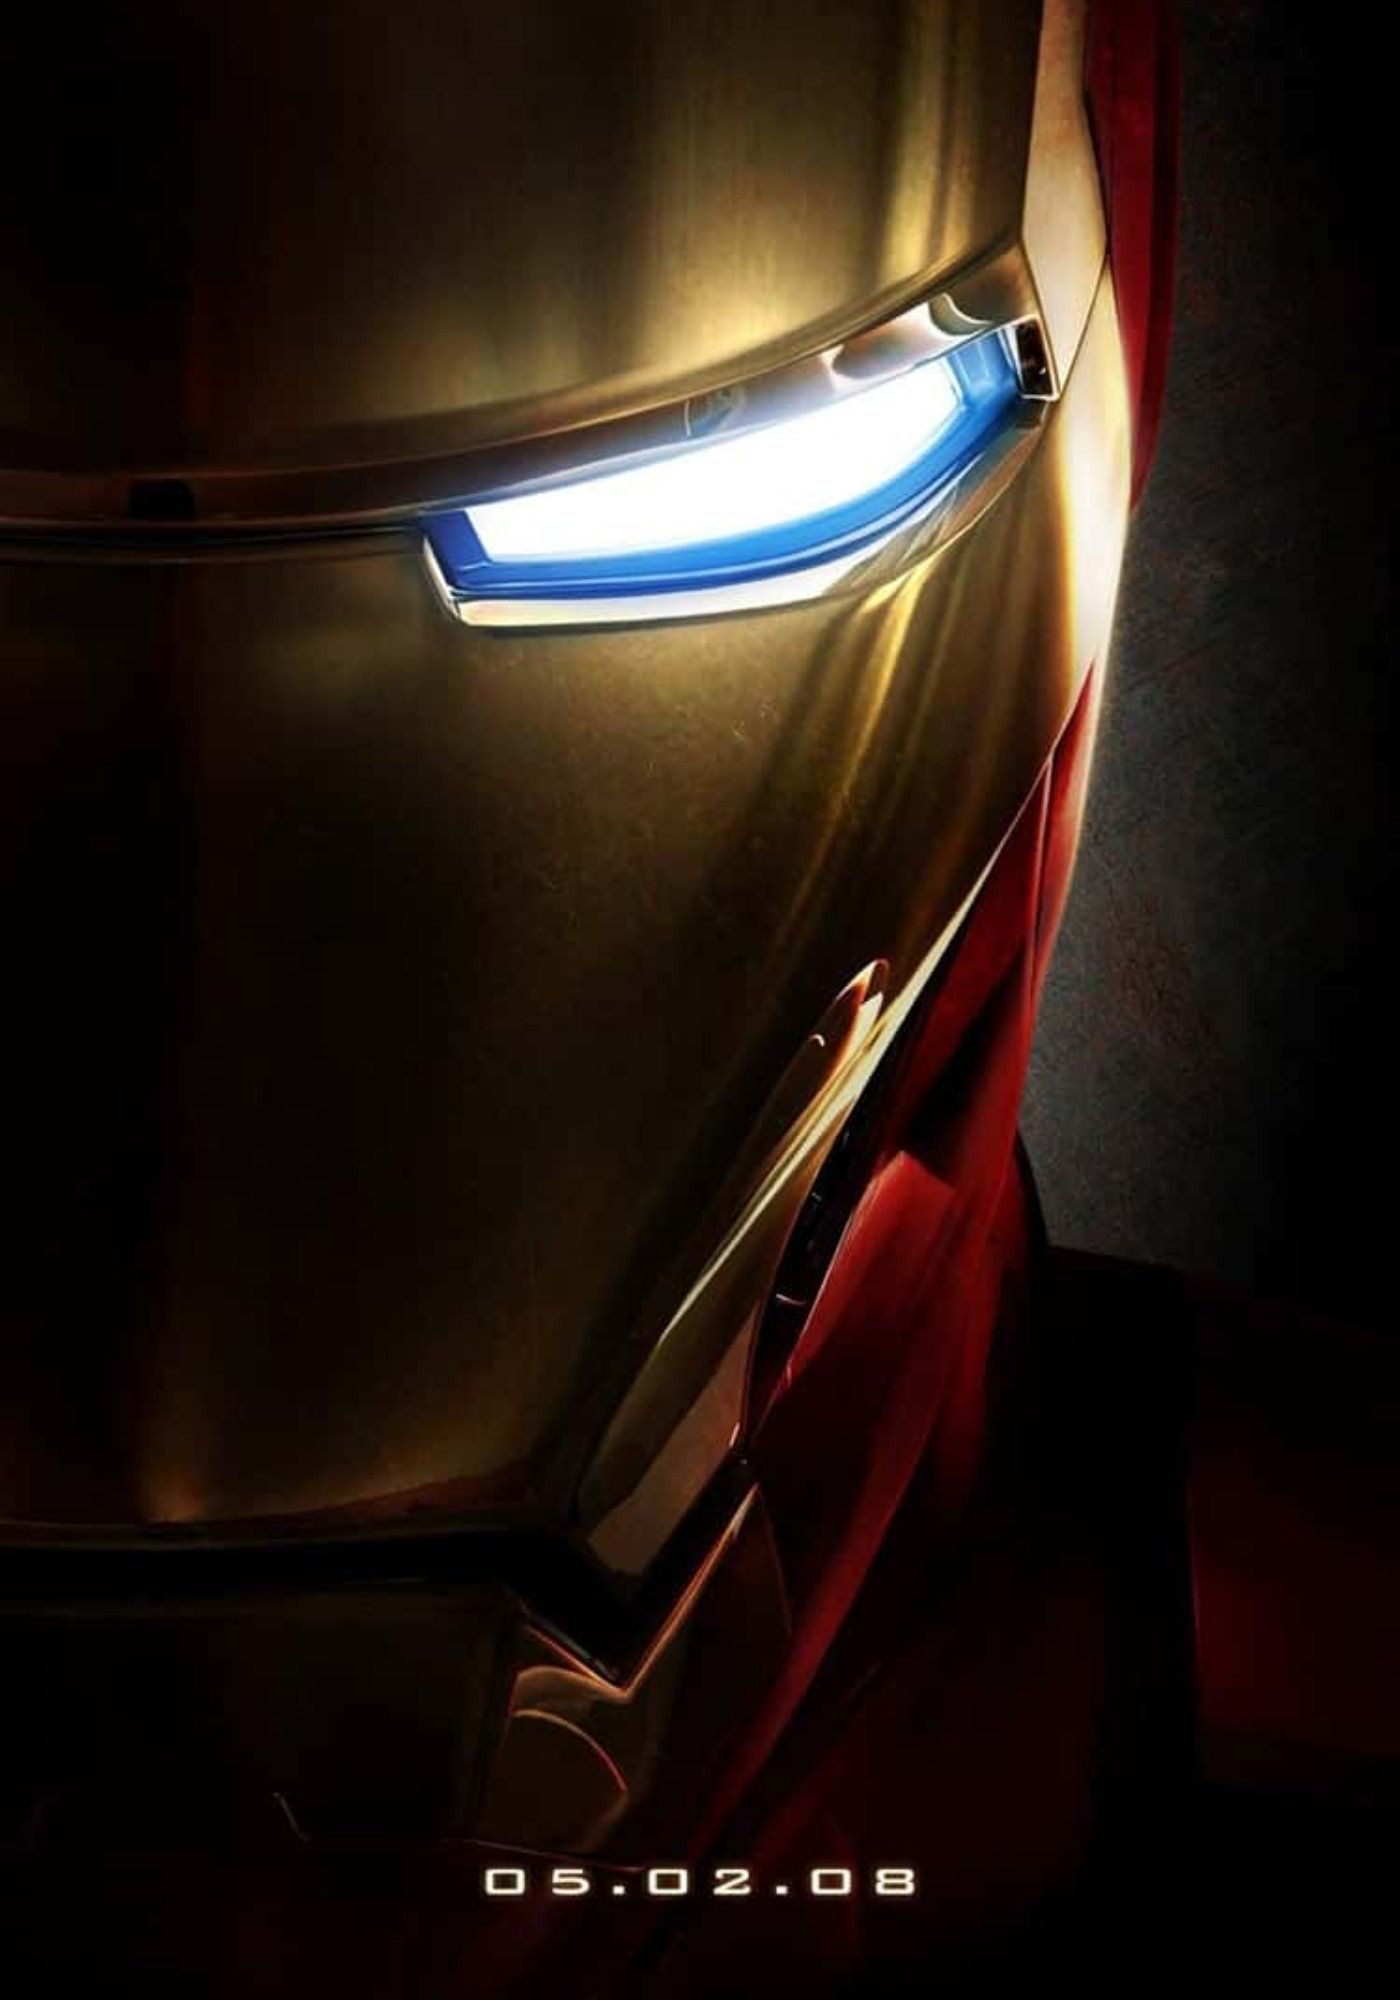 Iron Man Face Poster